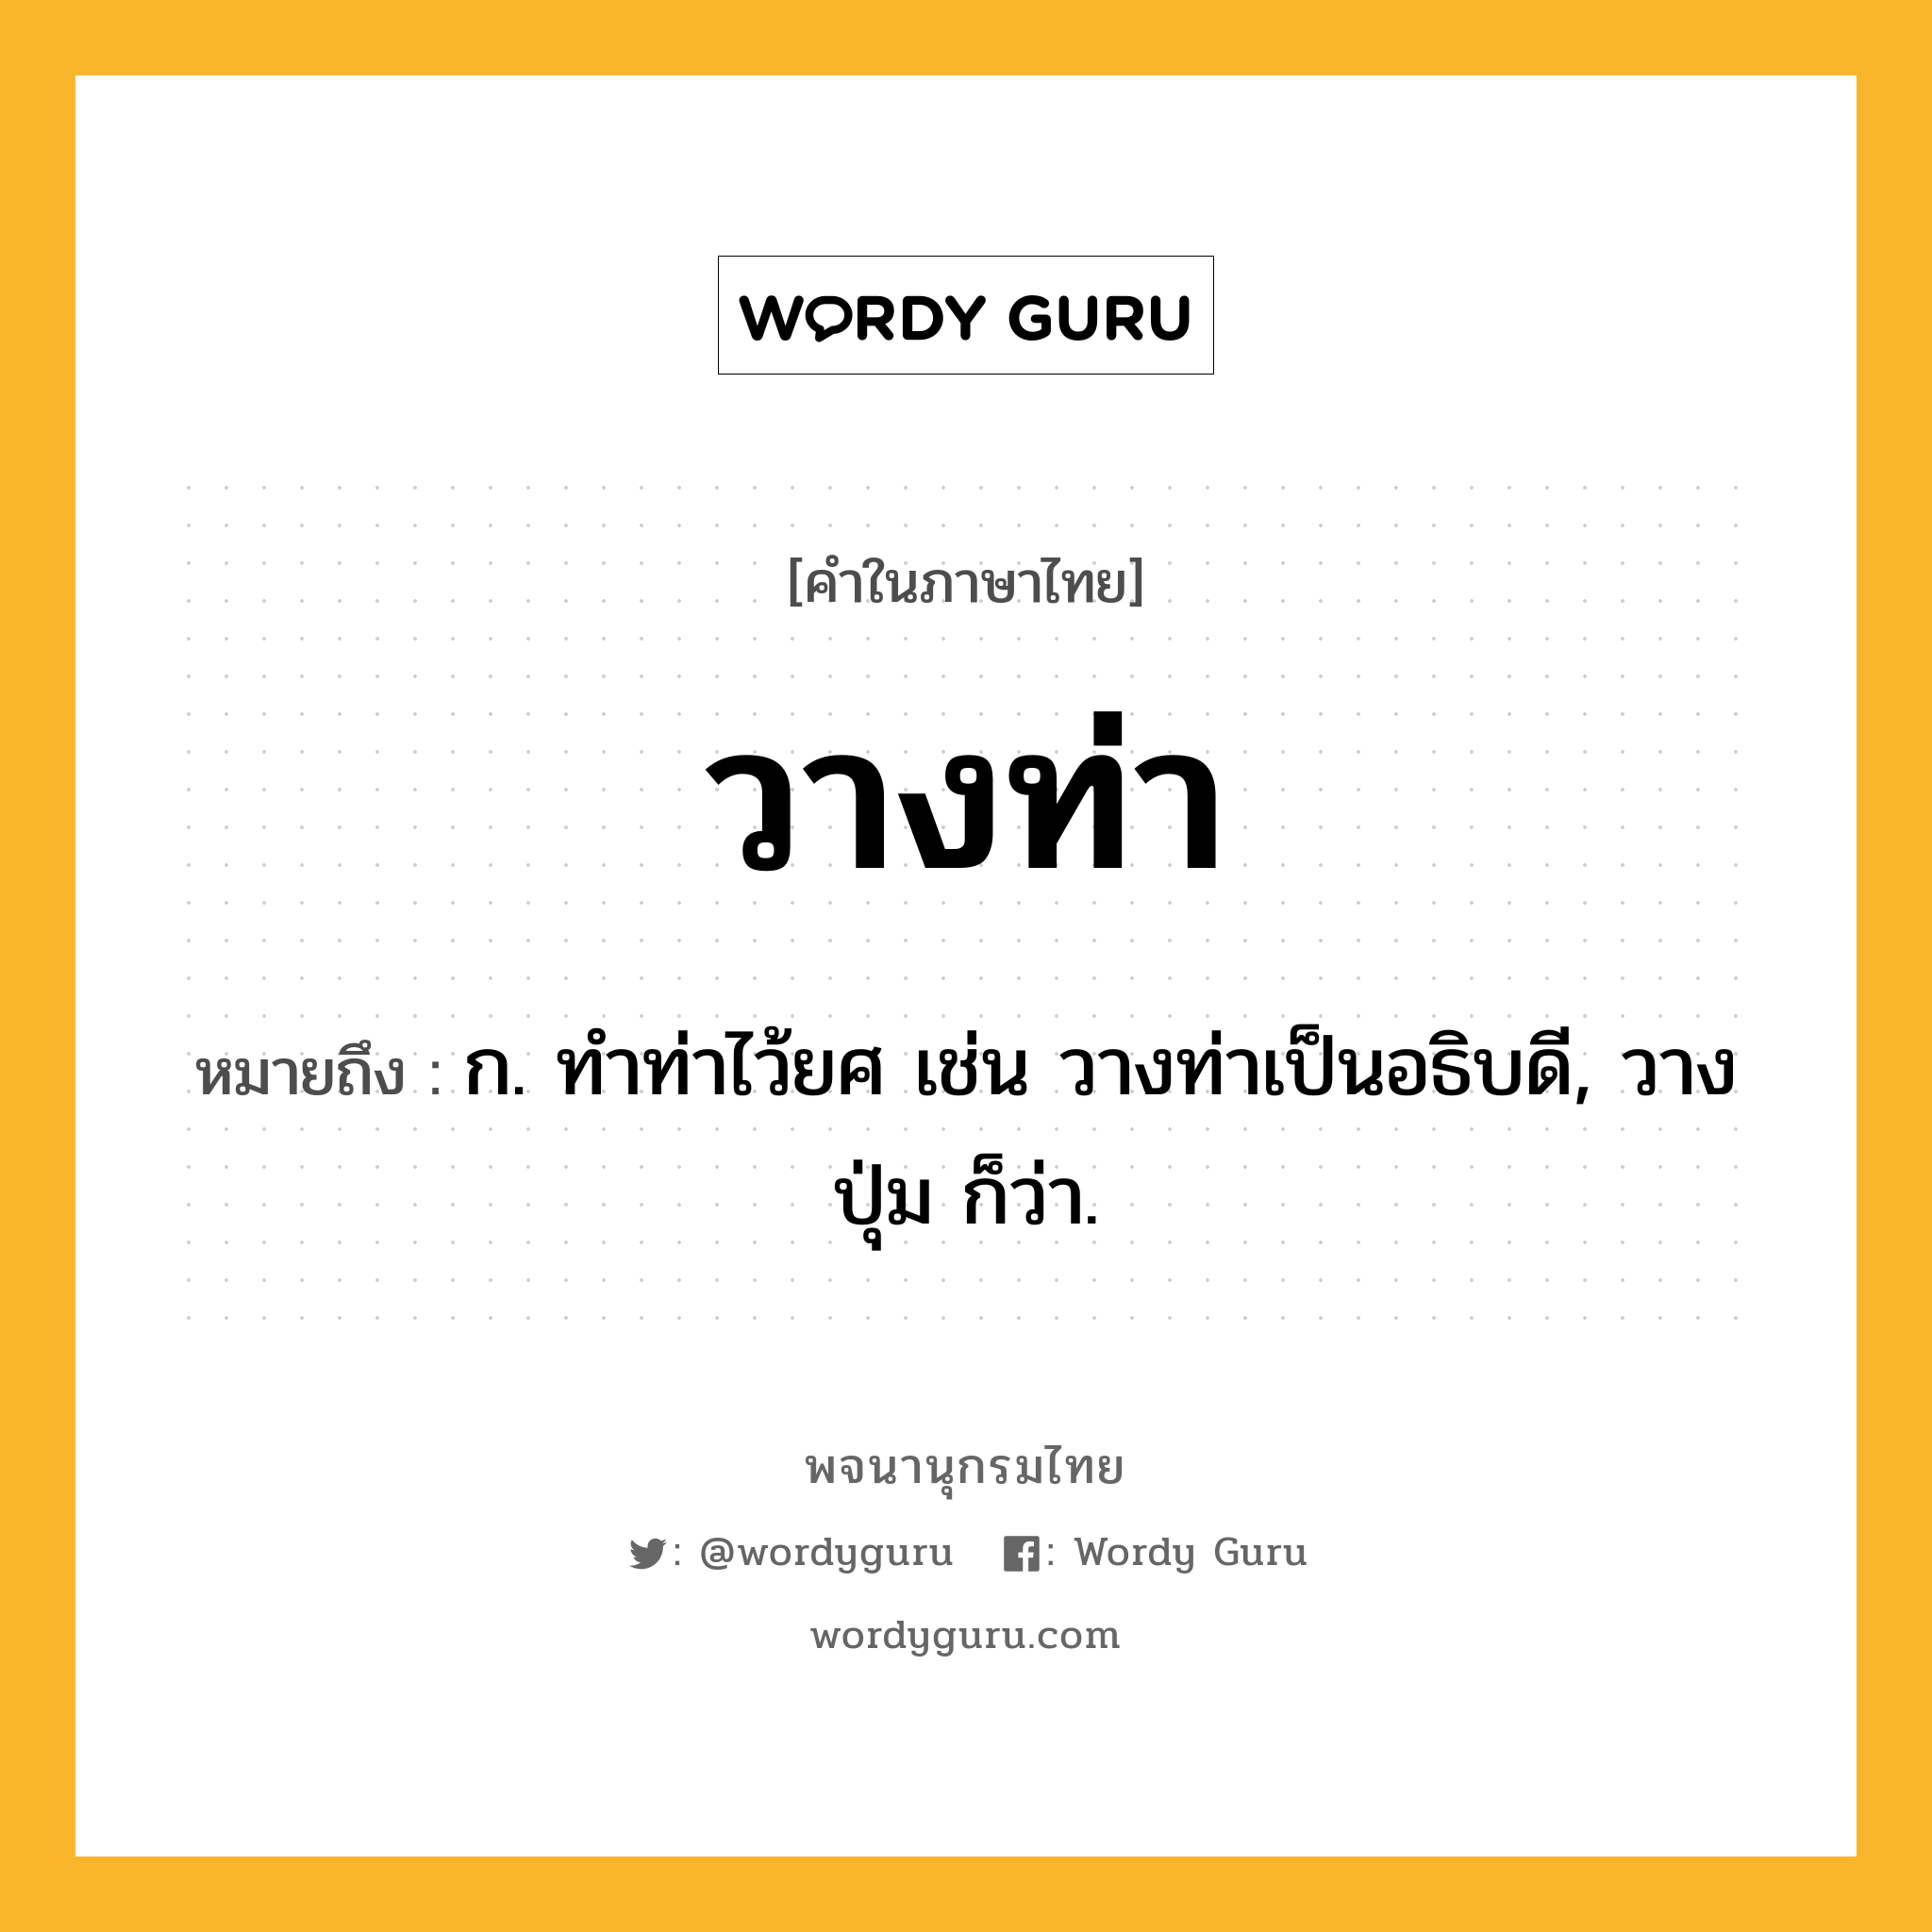 วางท่า ความหมาย หมายถึงอะไร?, คำในภาษาไทย วางท่า หมายถึง ก. ทําท่าไว้ยศ เช่น วางท่าเป็นอธิบดี, วางปุ่ม ก็ว่า.